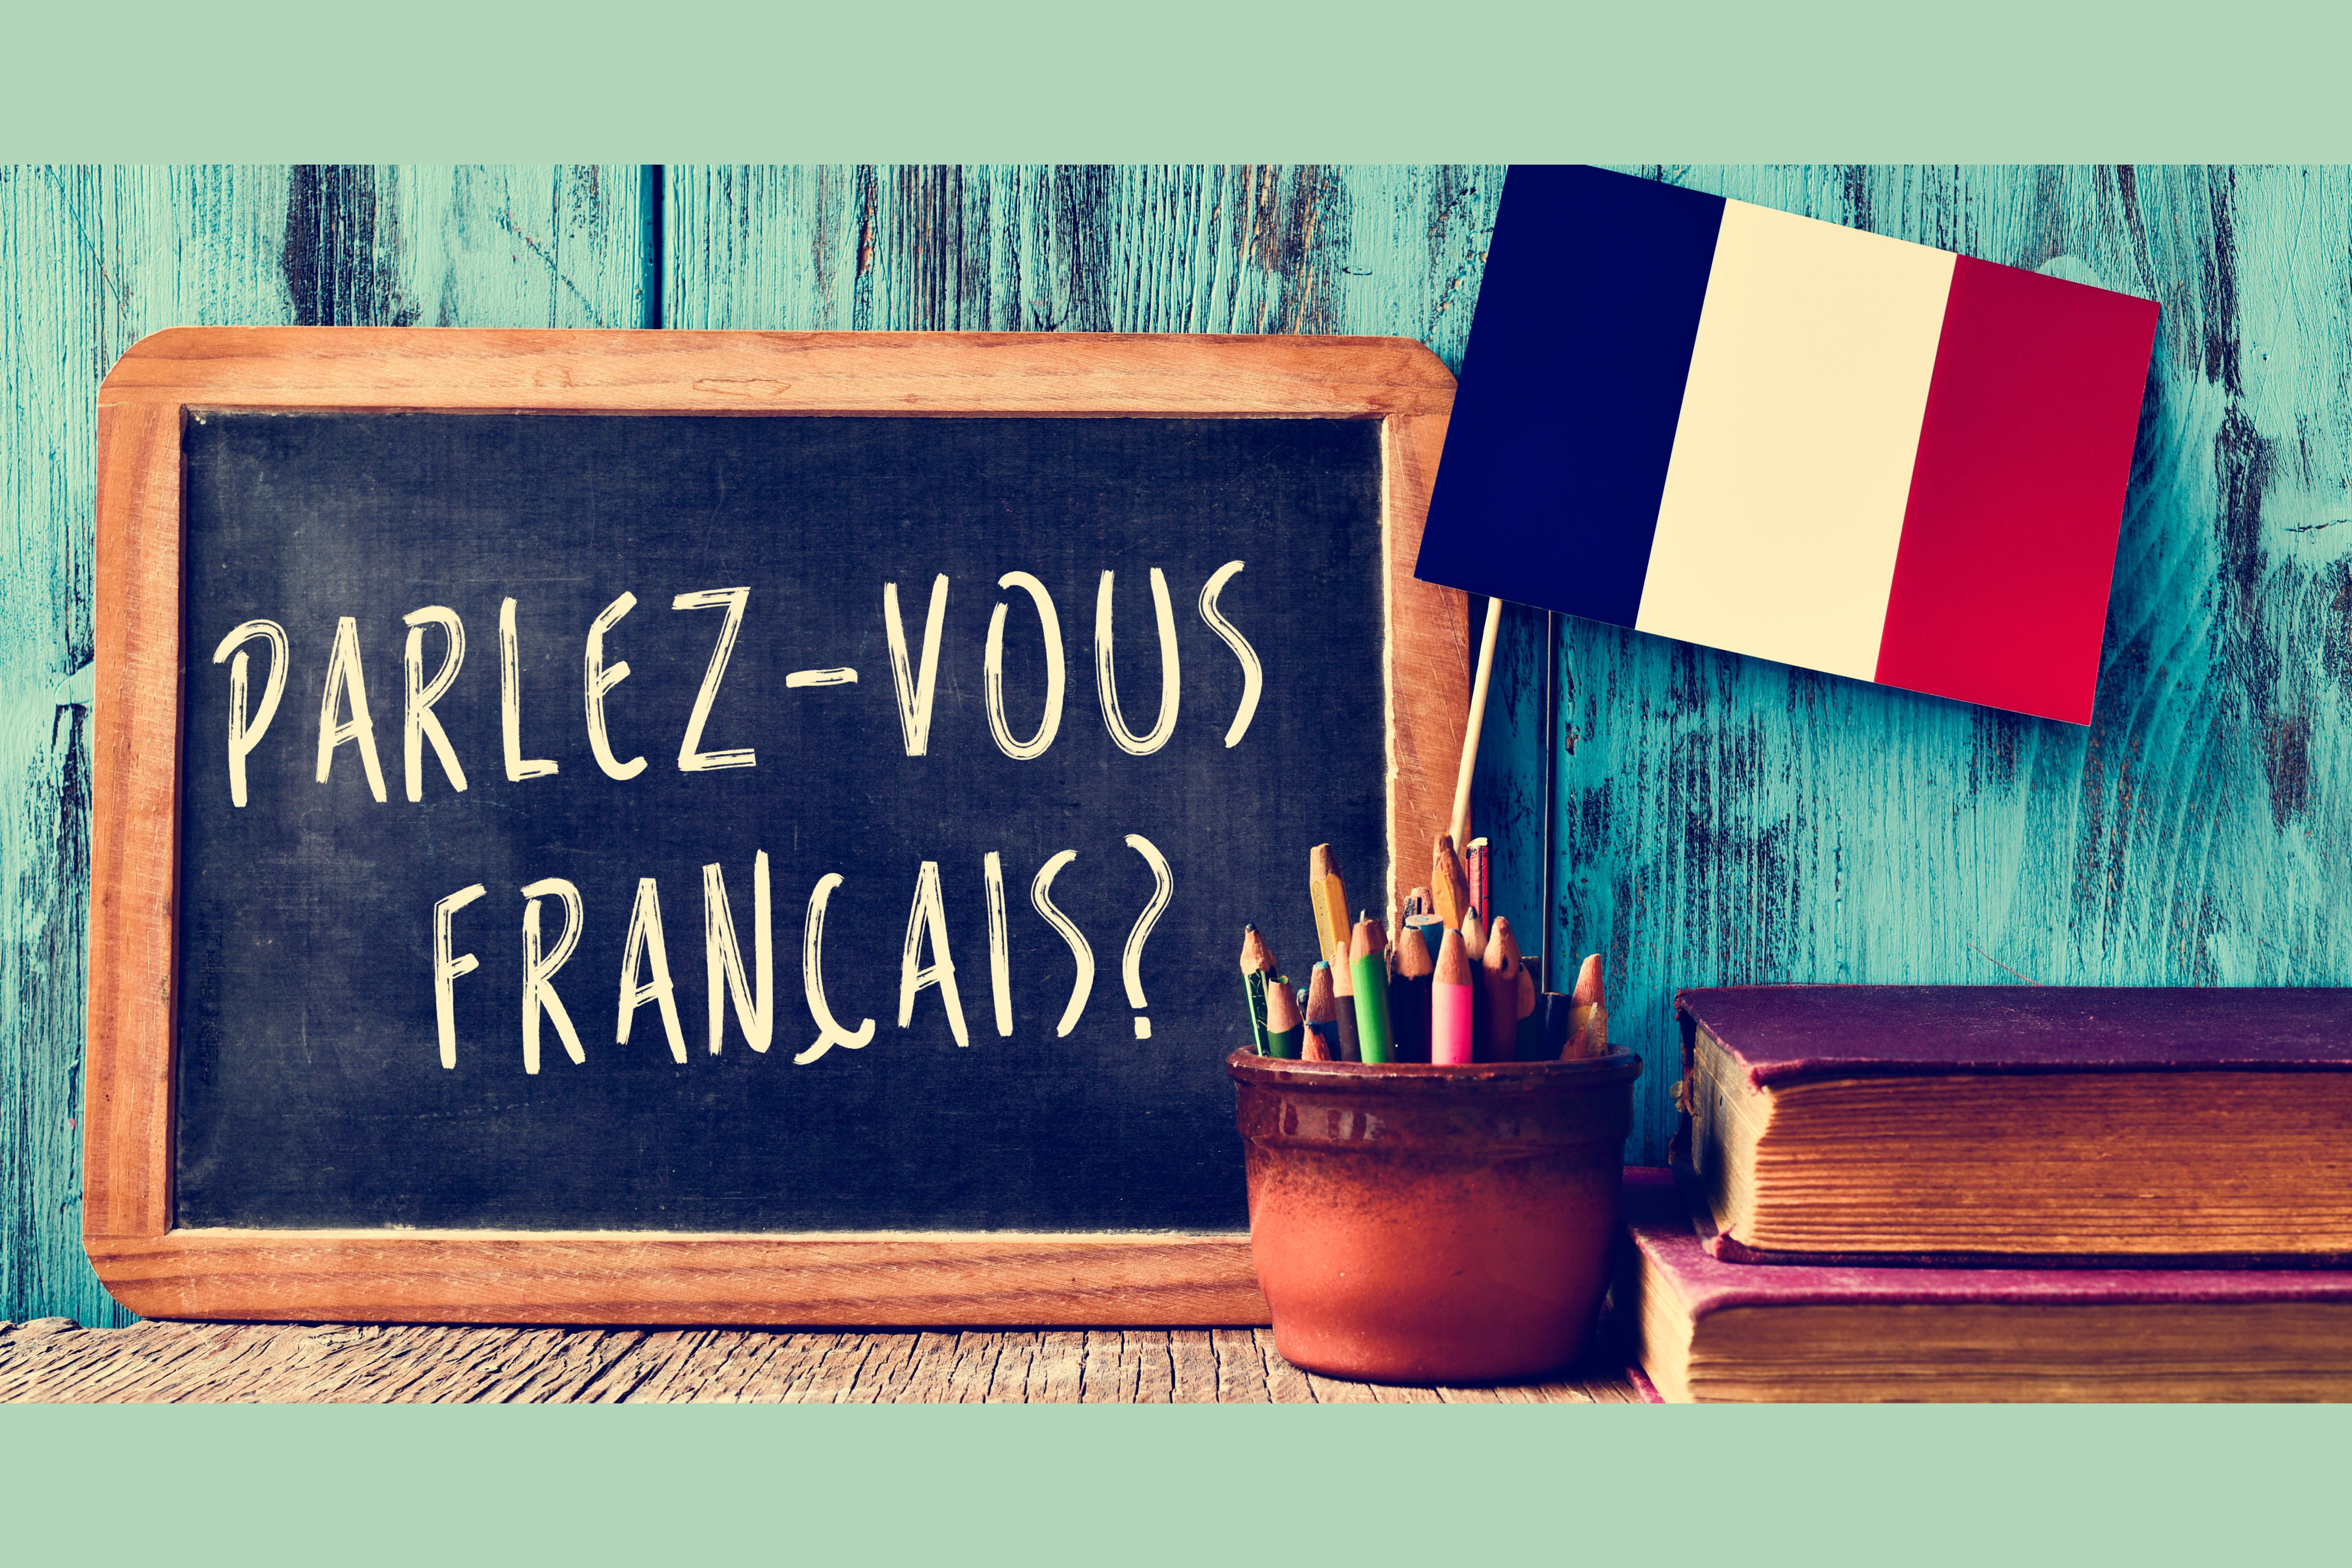 Il est francais. Французский язык. Урок французского языка. Изучение французского языка картинки. Французский язык в картинках.